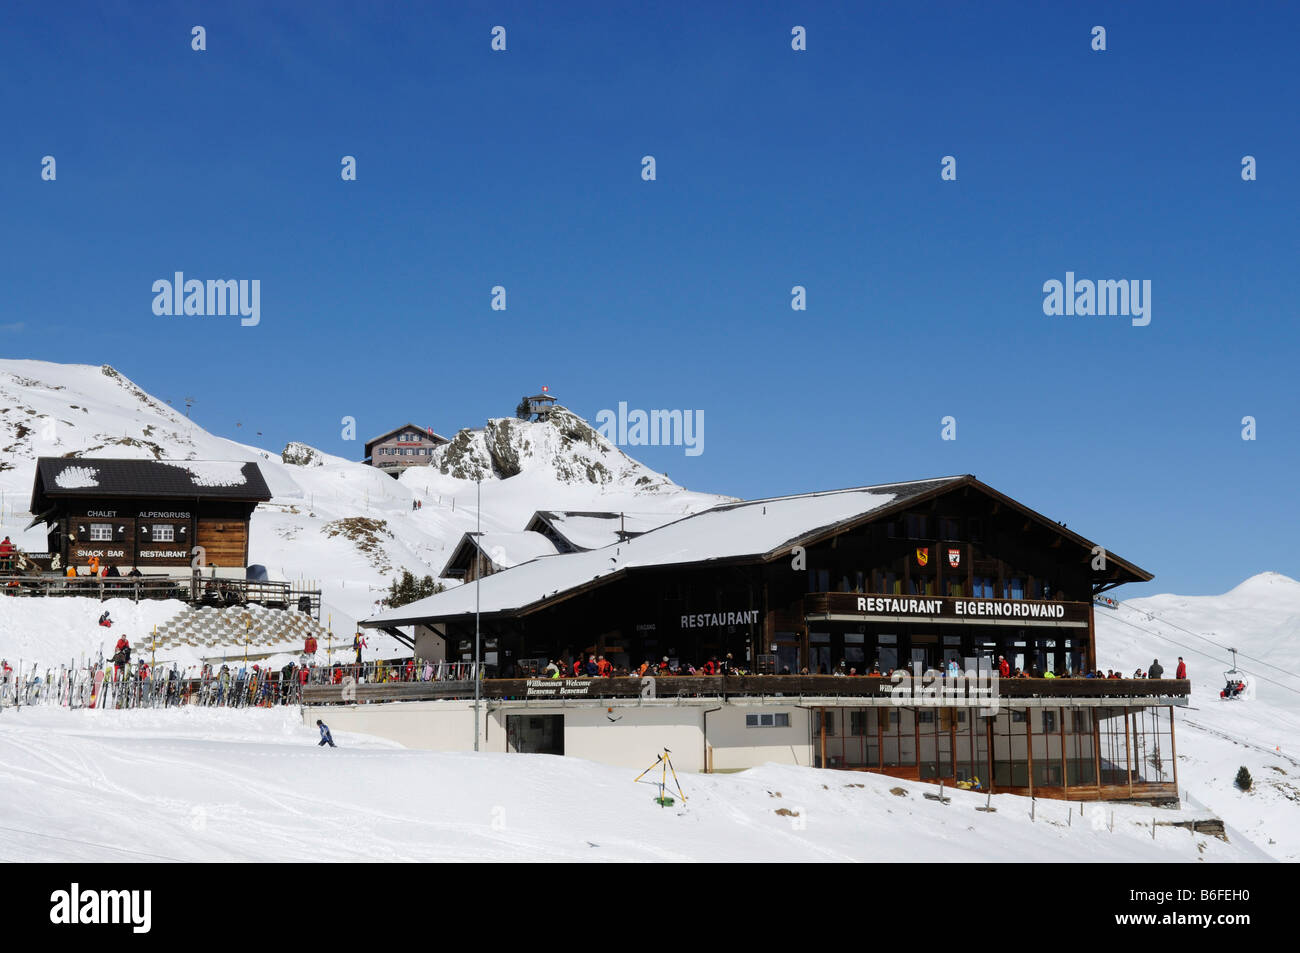 El restaurante Chalet Alpengruss Eiger-Nordwand, Kleine Scheidegg, montaña, Grindelwald, Alpes Berneses, Suiza, Europa Foto de stock